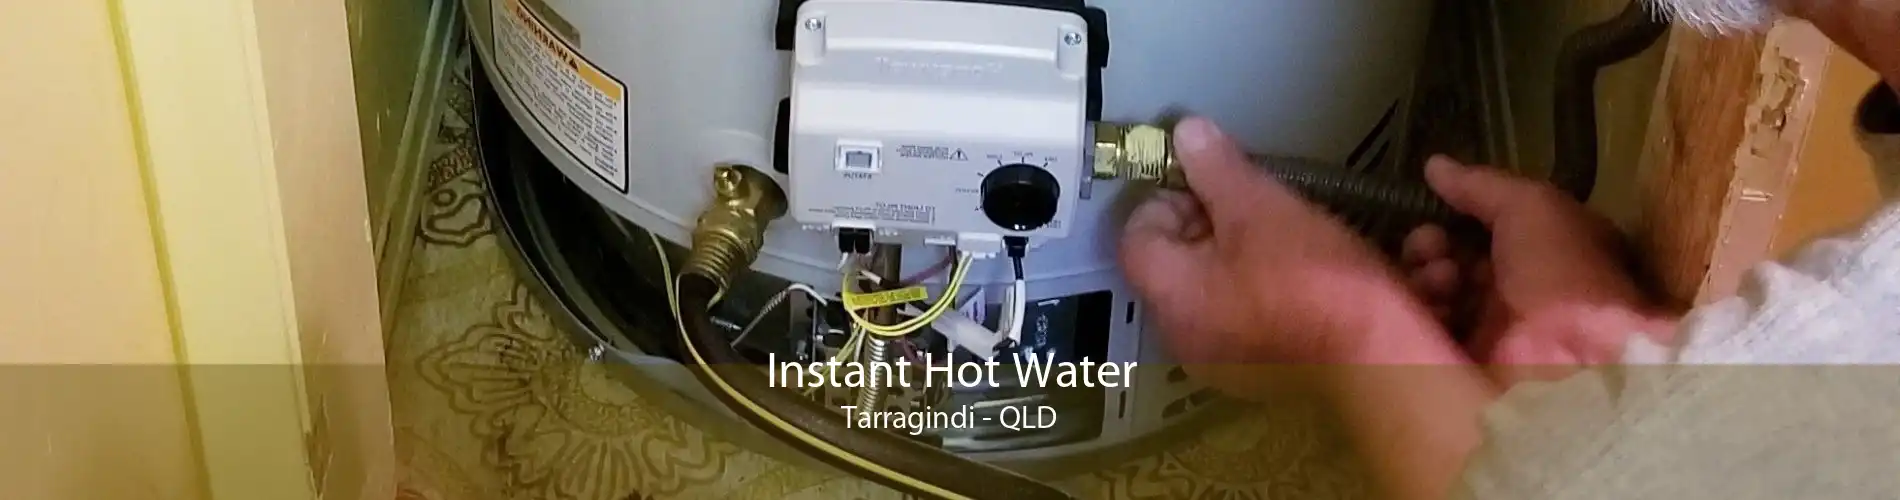 Instant Hot Water Tarragindi - QLD